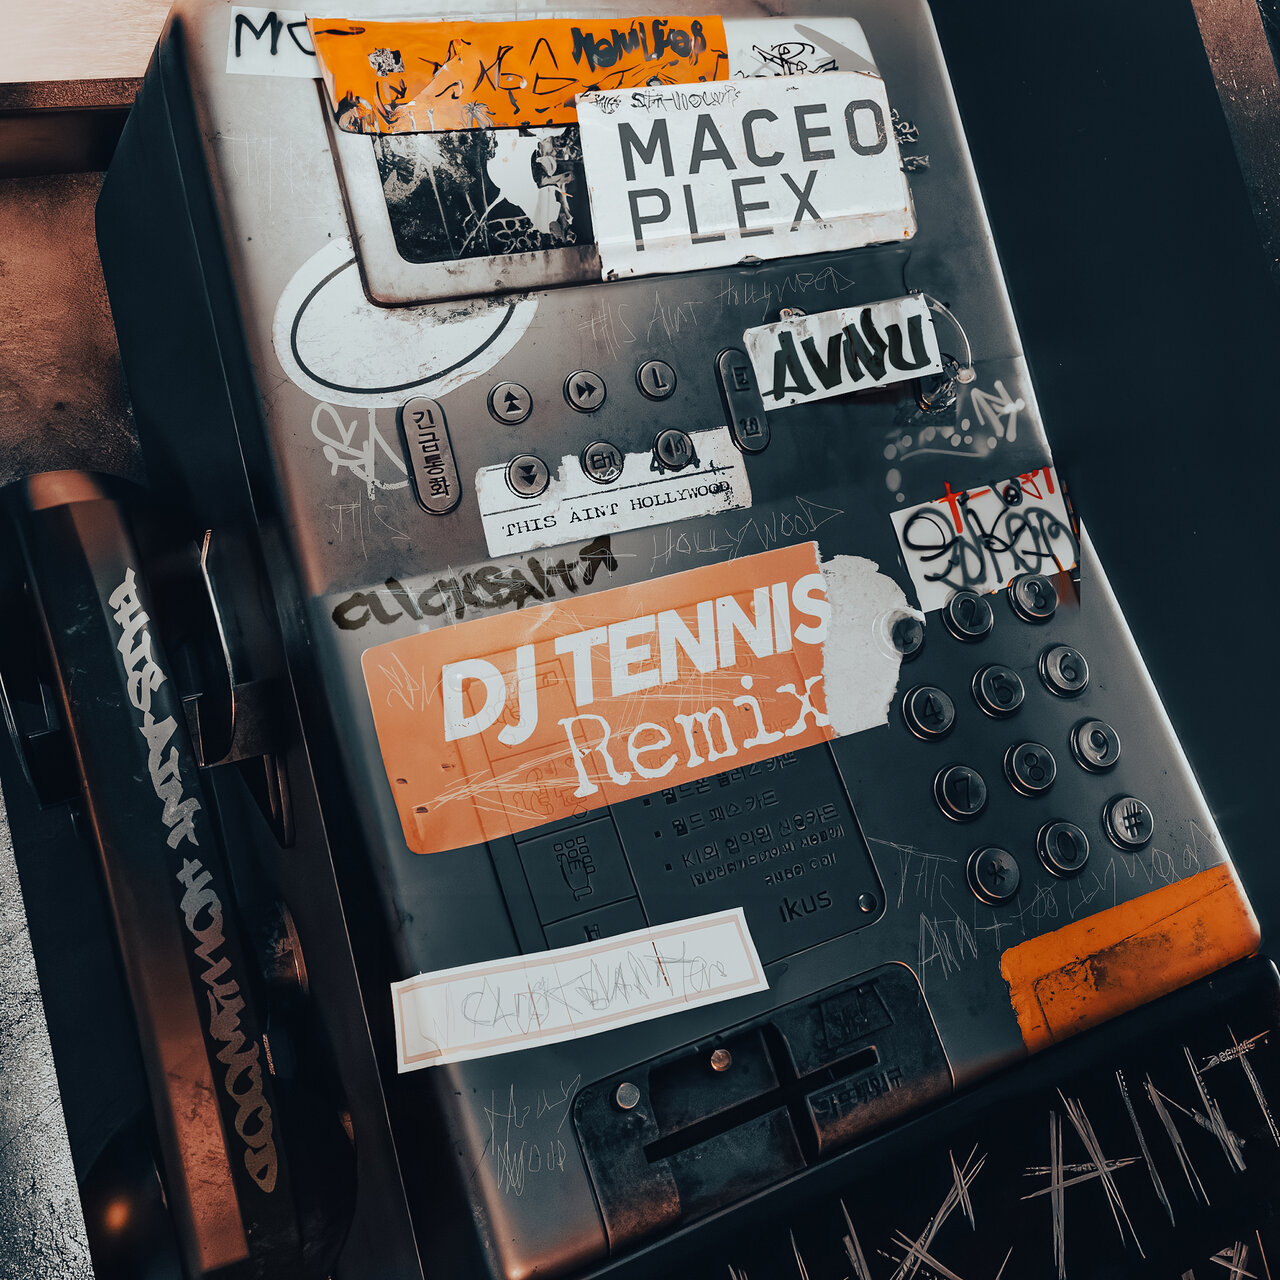 Maceo Plex and AVNU (UK)-Clickbait (This Aint Hollywood) (DJ Tennis Remix)-(LR027R)-16BIT-WEB-FLAC-2023-AFO